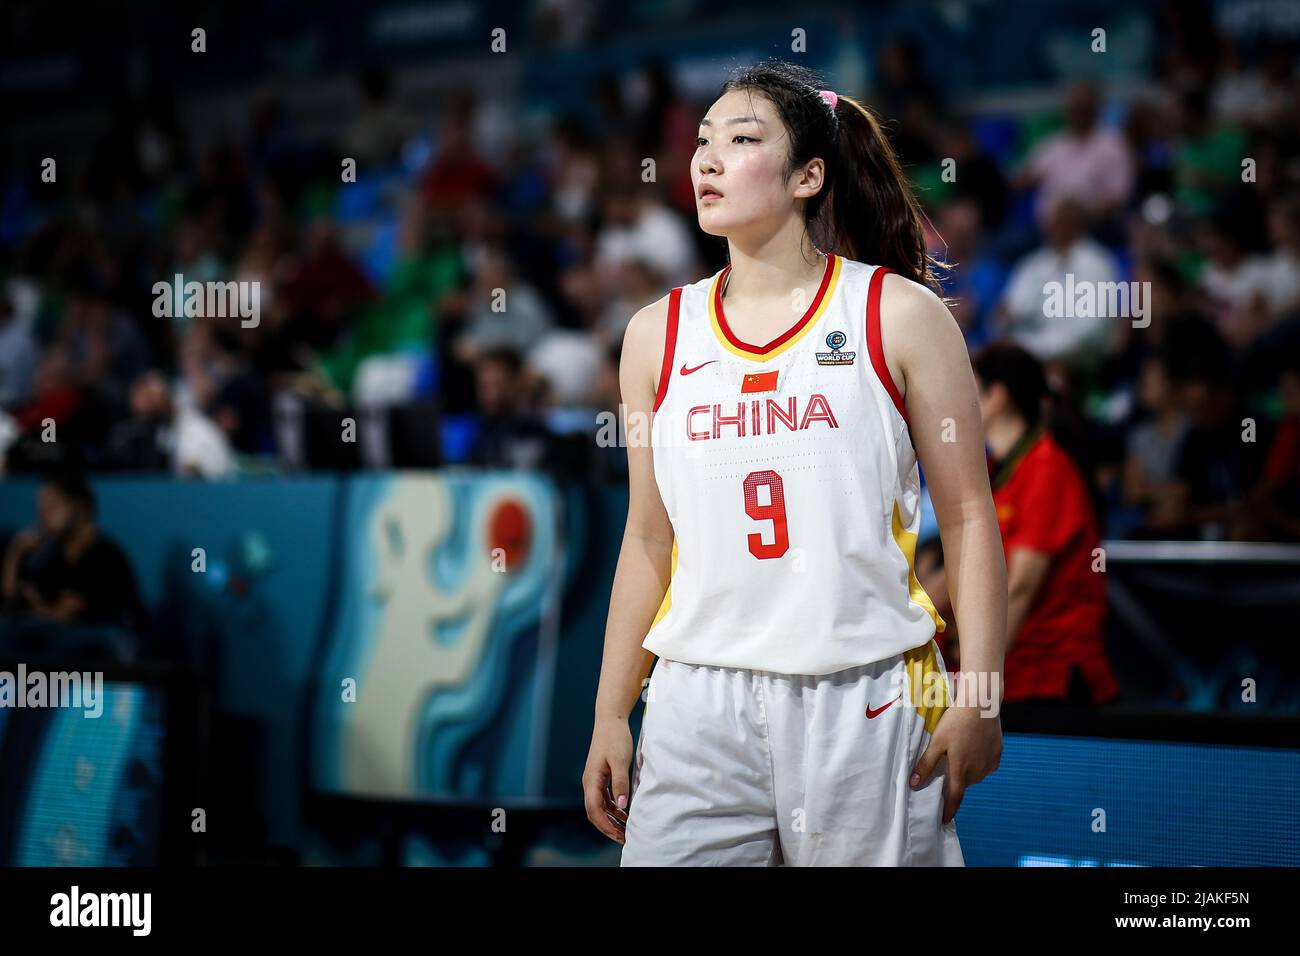 Espagne, Ténérife, 26 septembre 2018: Joueur de basket-ball féminin chinois Li Meng pendant la coupe du monde de basket-ball féminin Banque D'Images